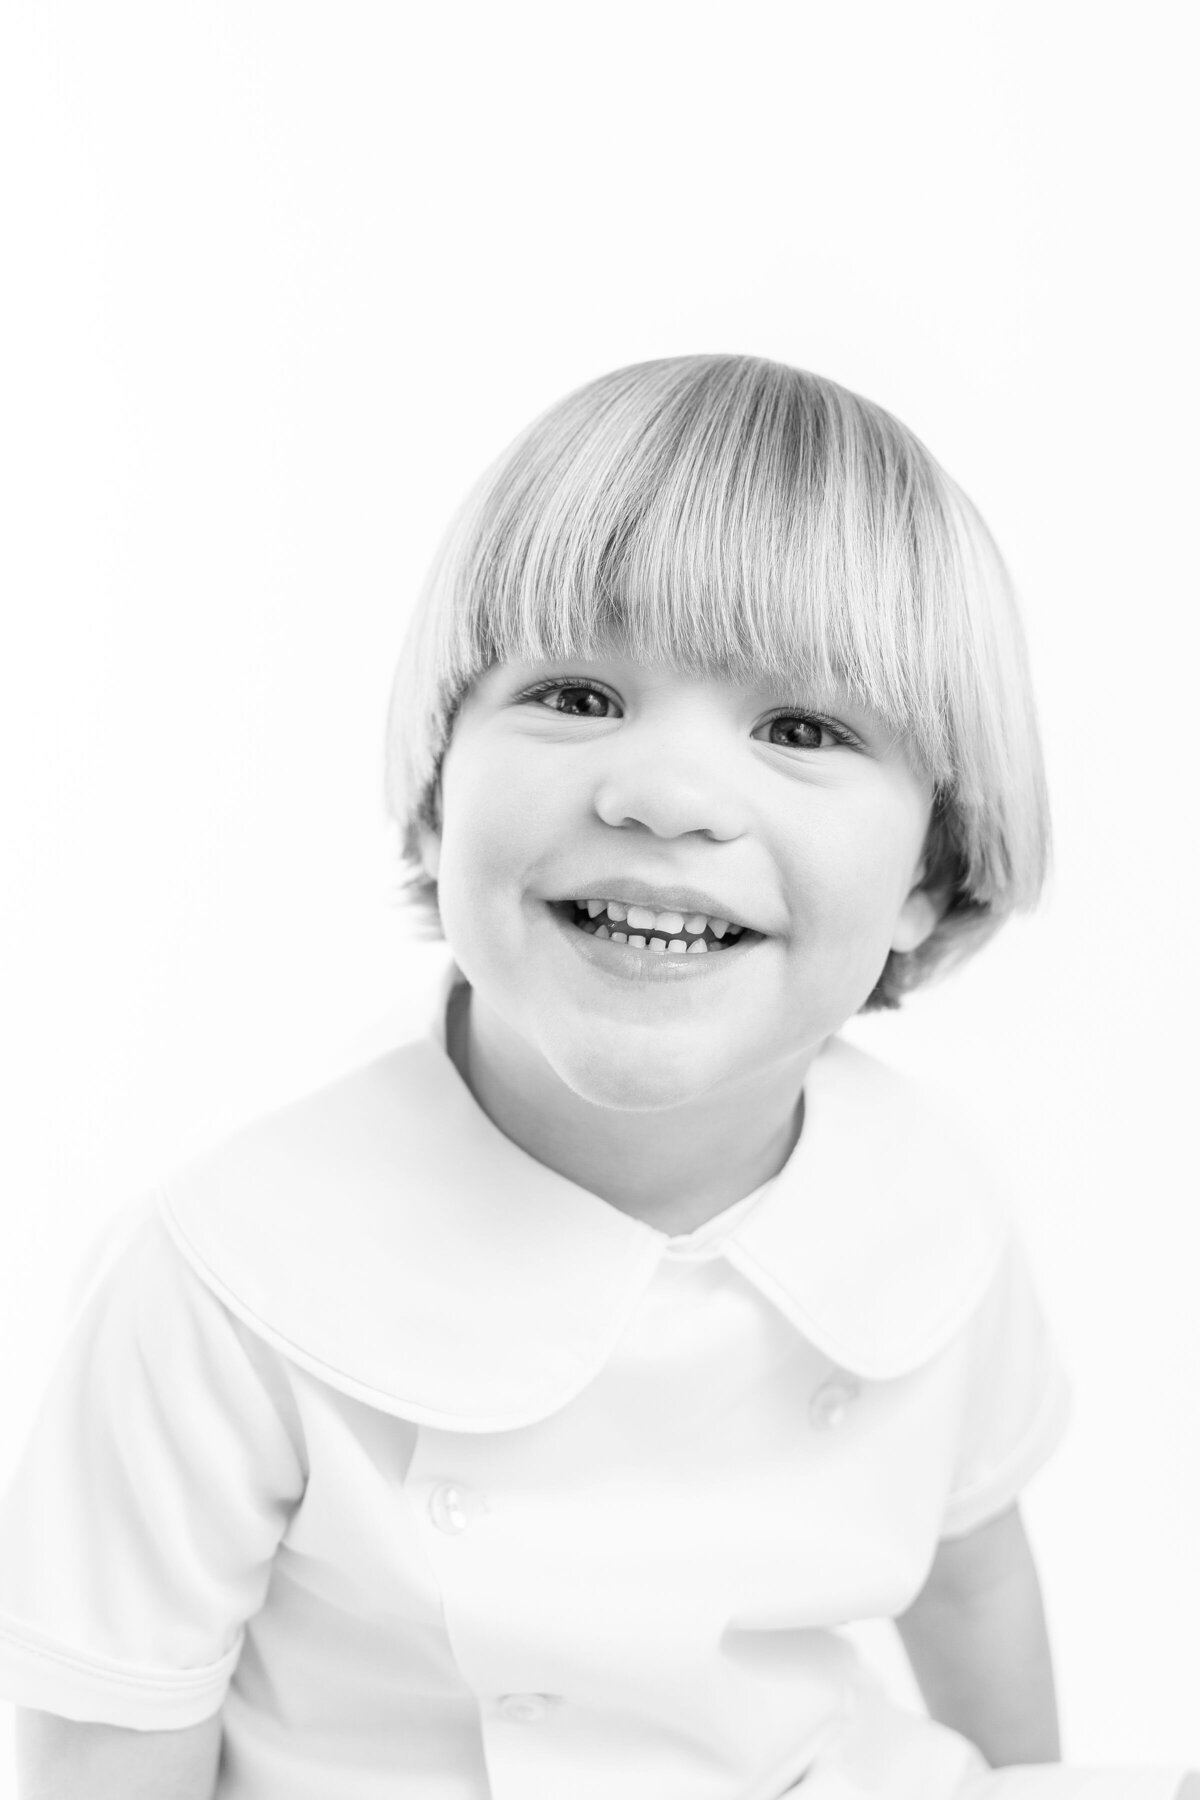 Black and white children portraits _ chattanooga